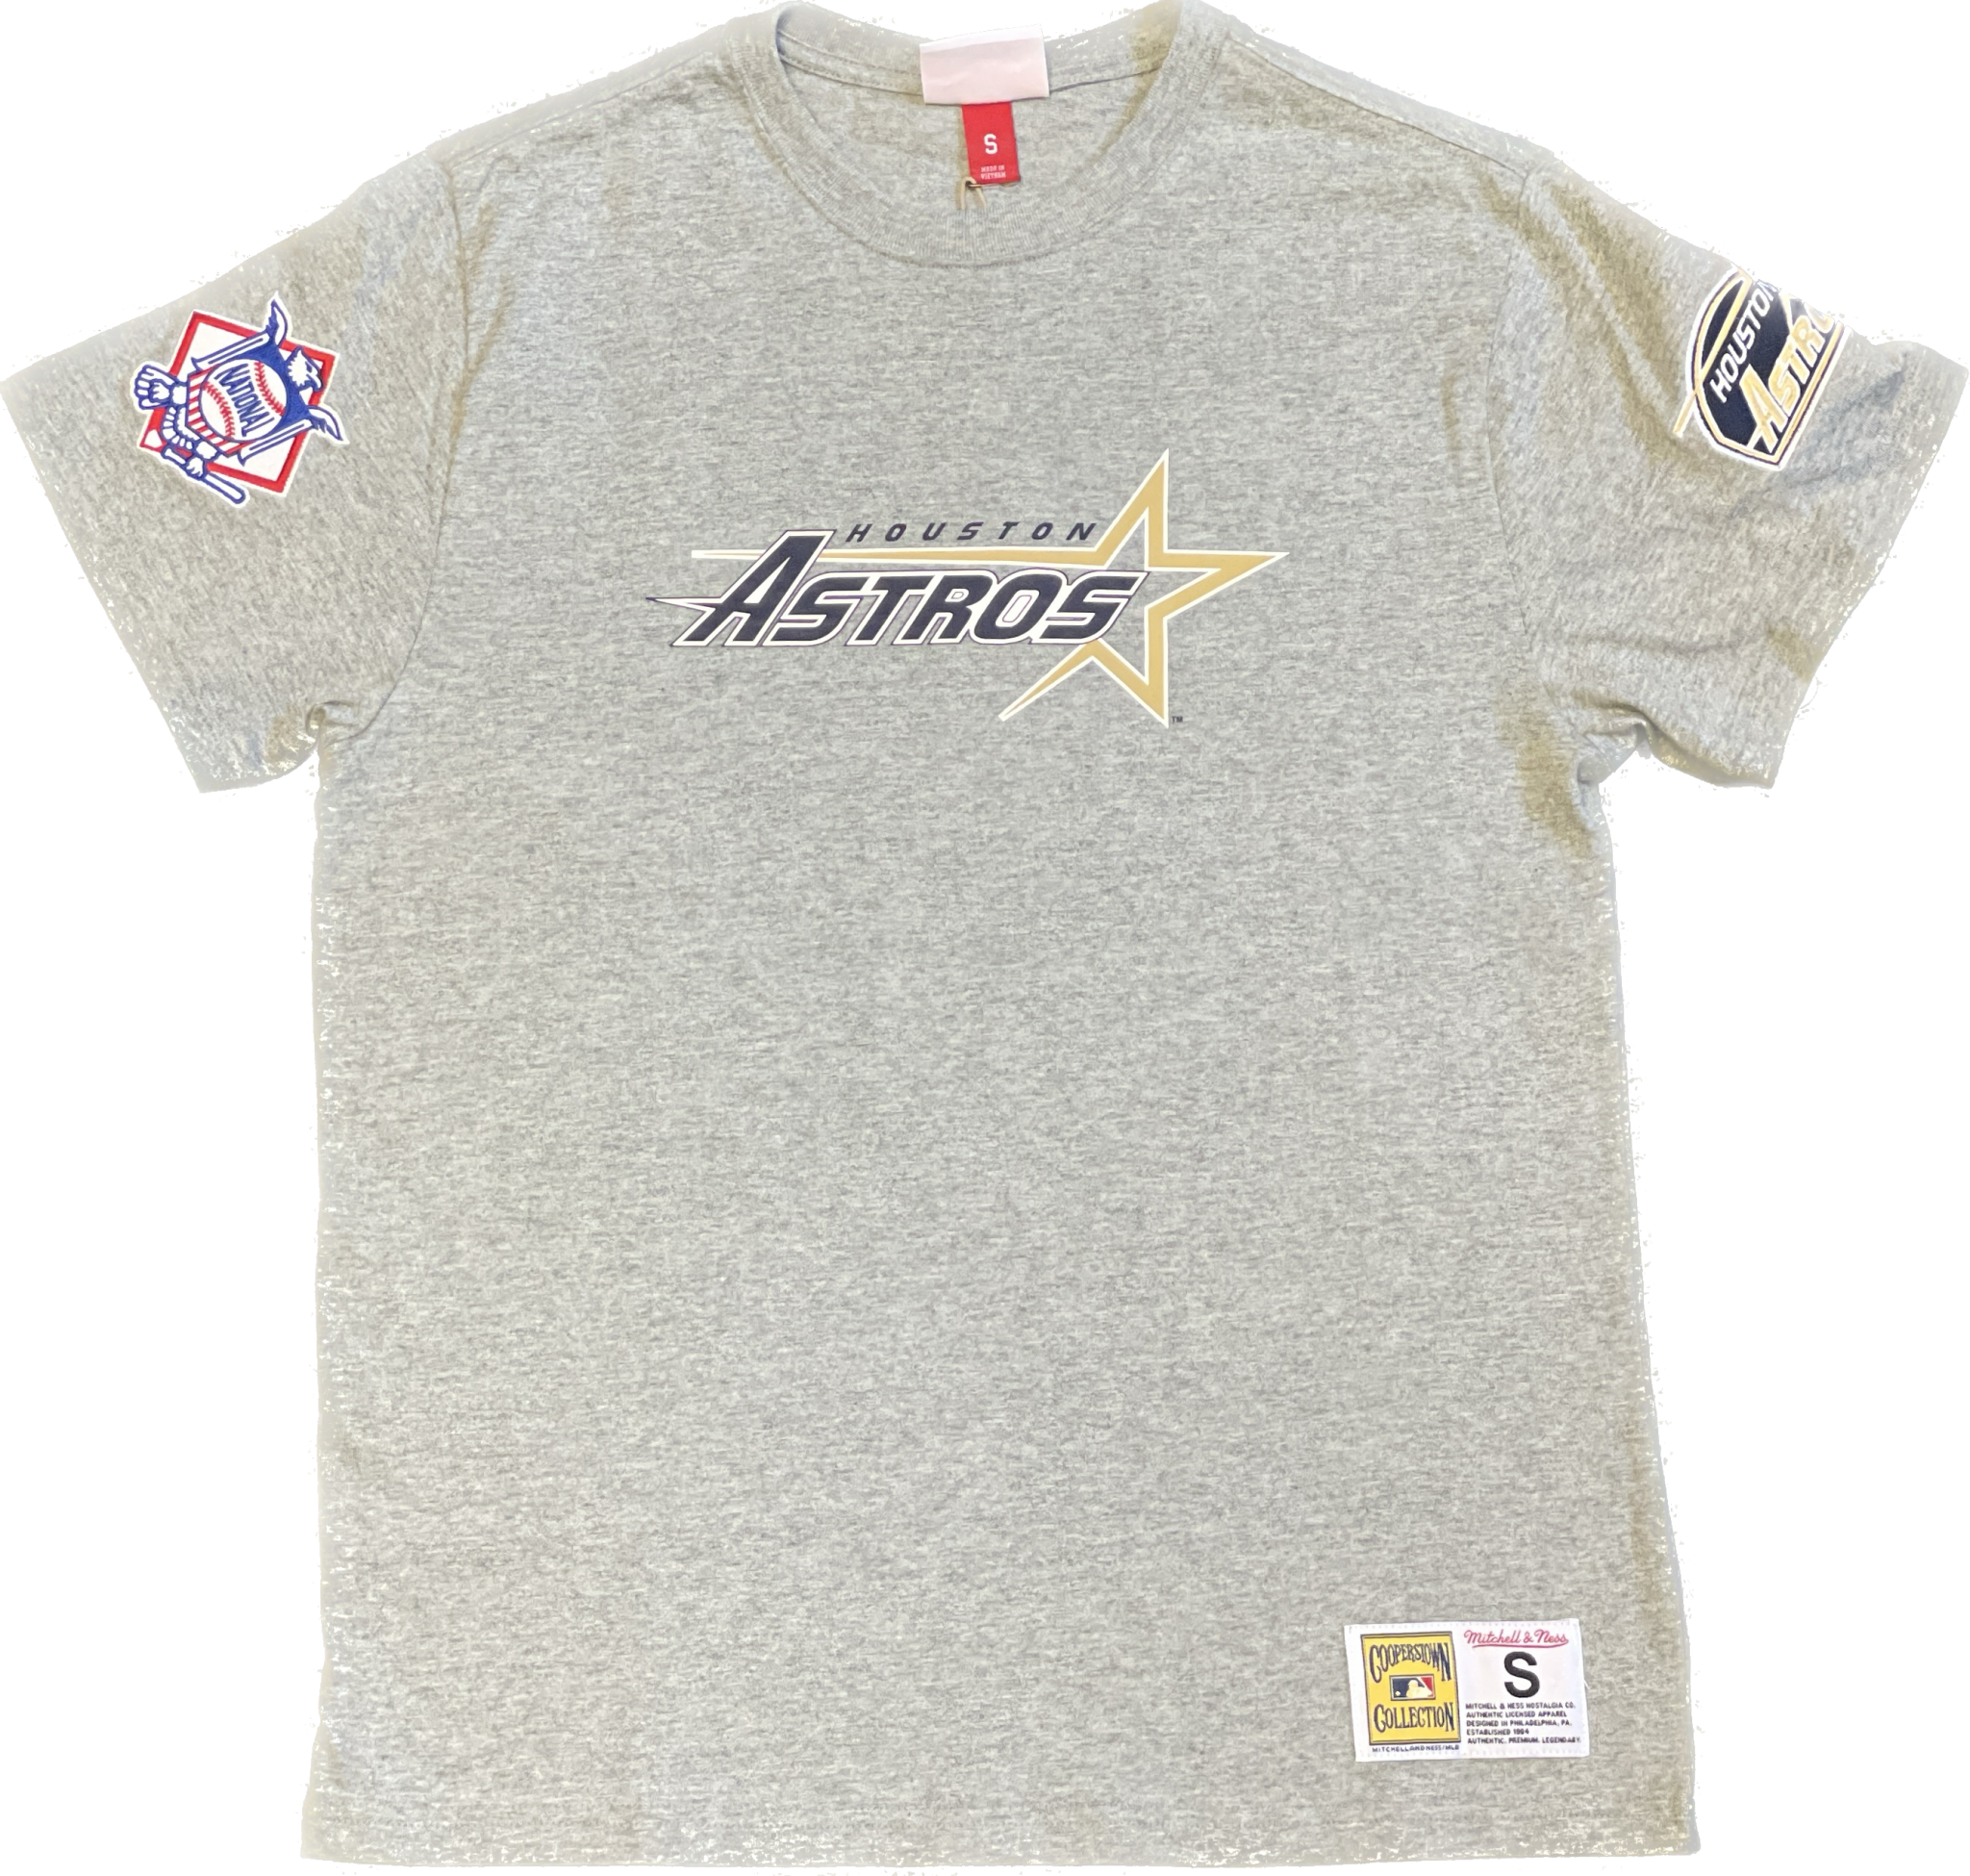 Astros Team Store, Authentics